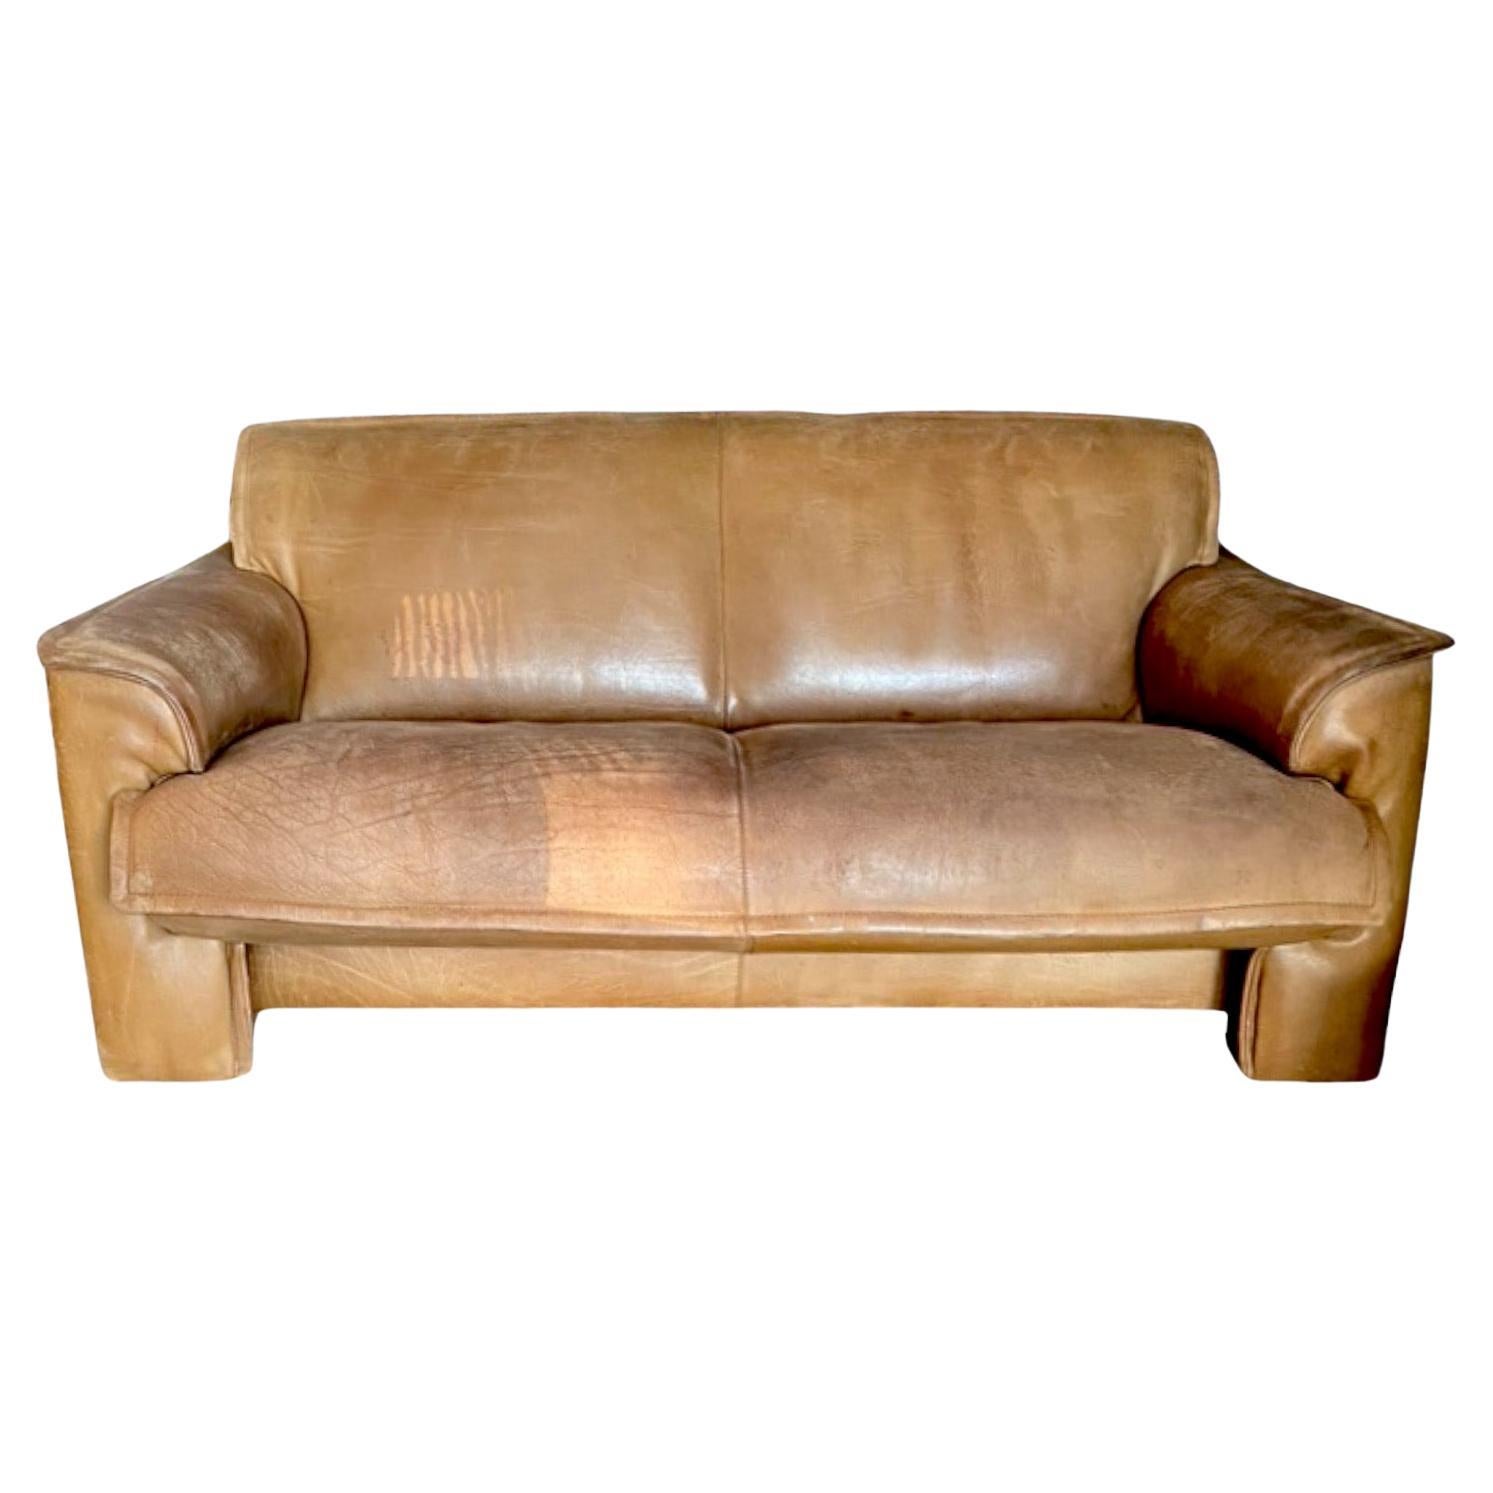 Leolux Vintage 2-Seat Loveseat in Buffalo Leather